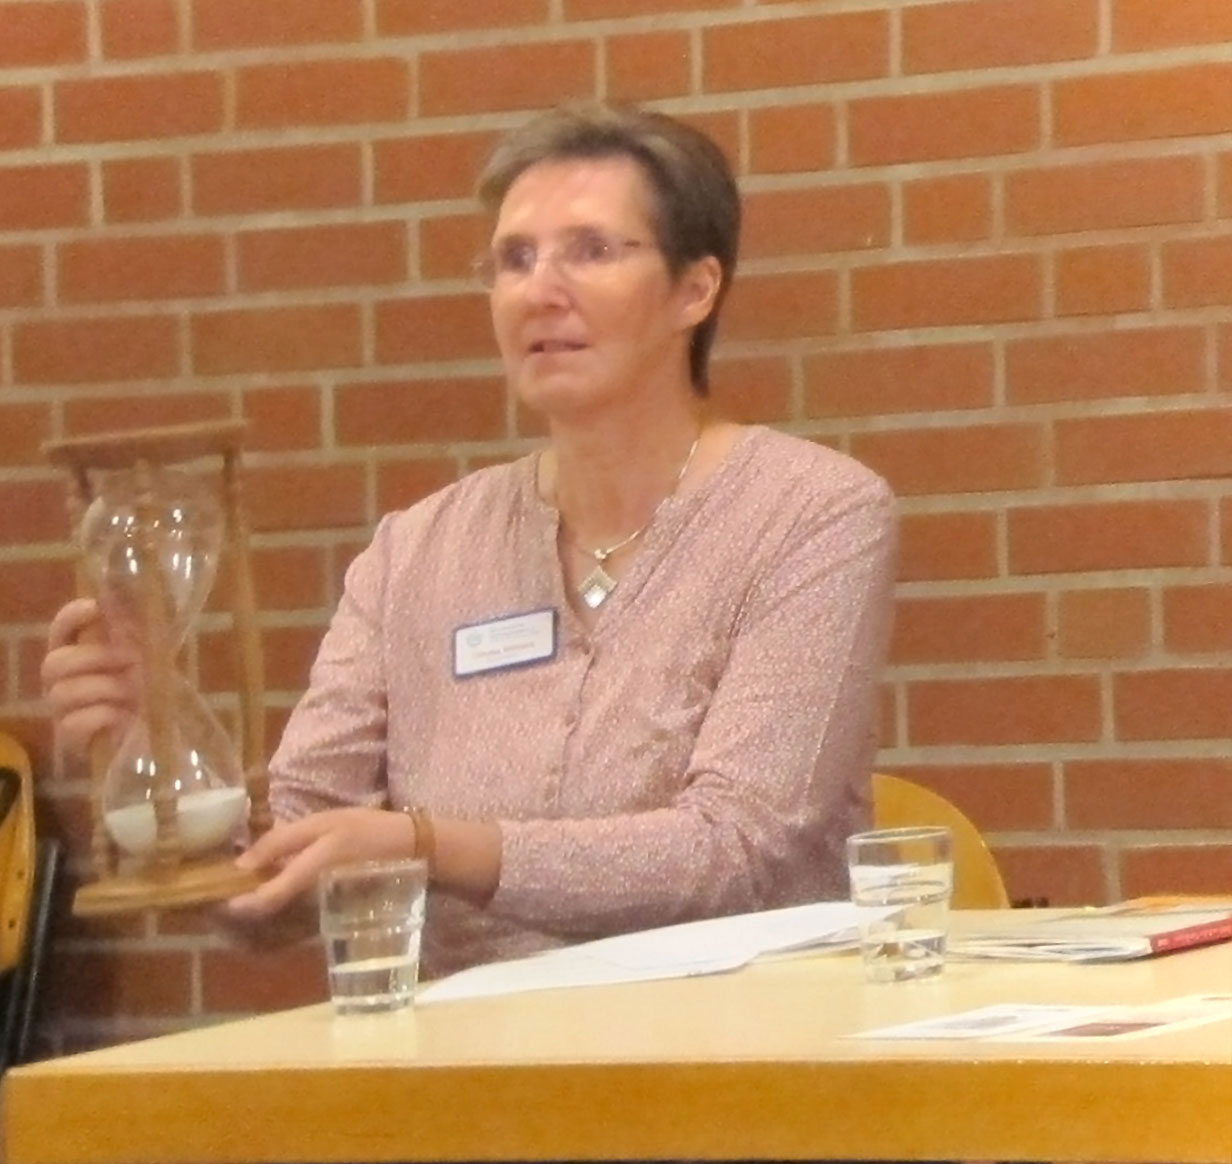 Christel Engeland moderierte den Abend. Zu Beginn interviewte sie Dr. Ailing Kleefuß-Lie, die über ihre Arbeit als Koordinatorin bei der Ökumenischen Hospizgruppe e.V. berichtete.